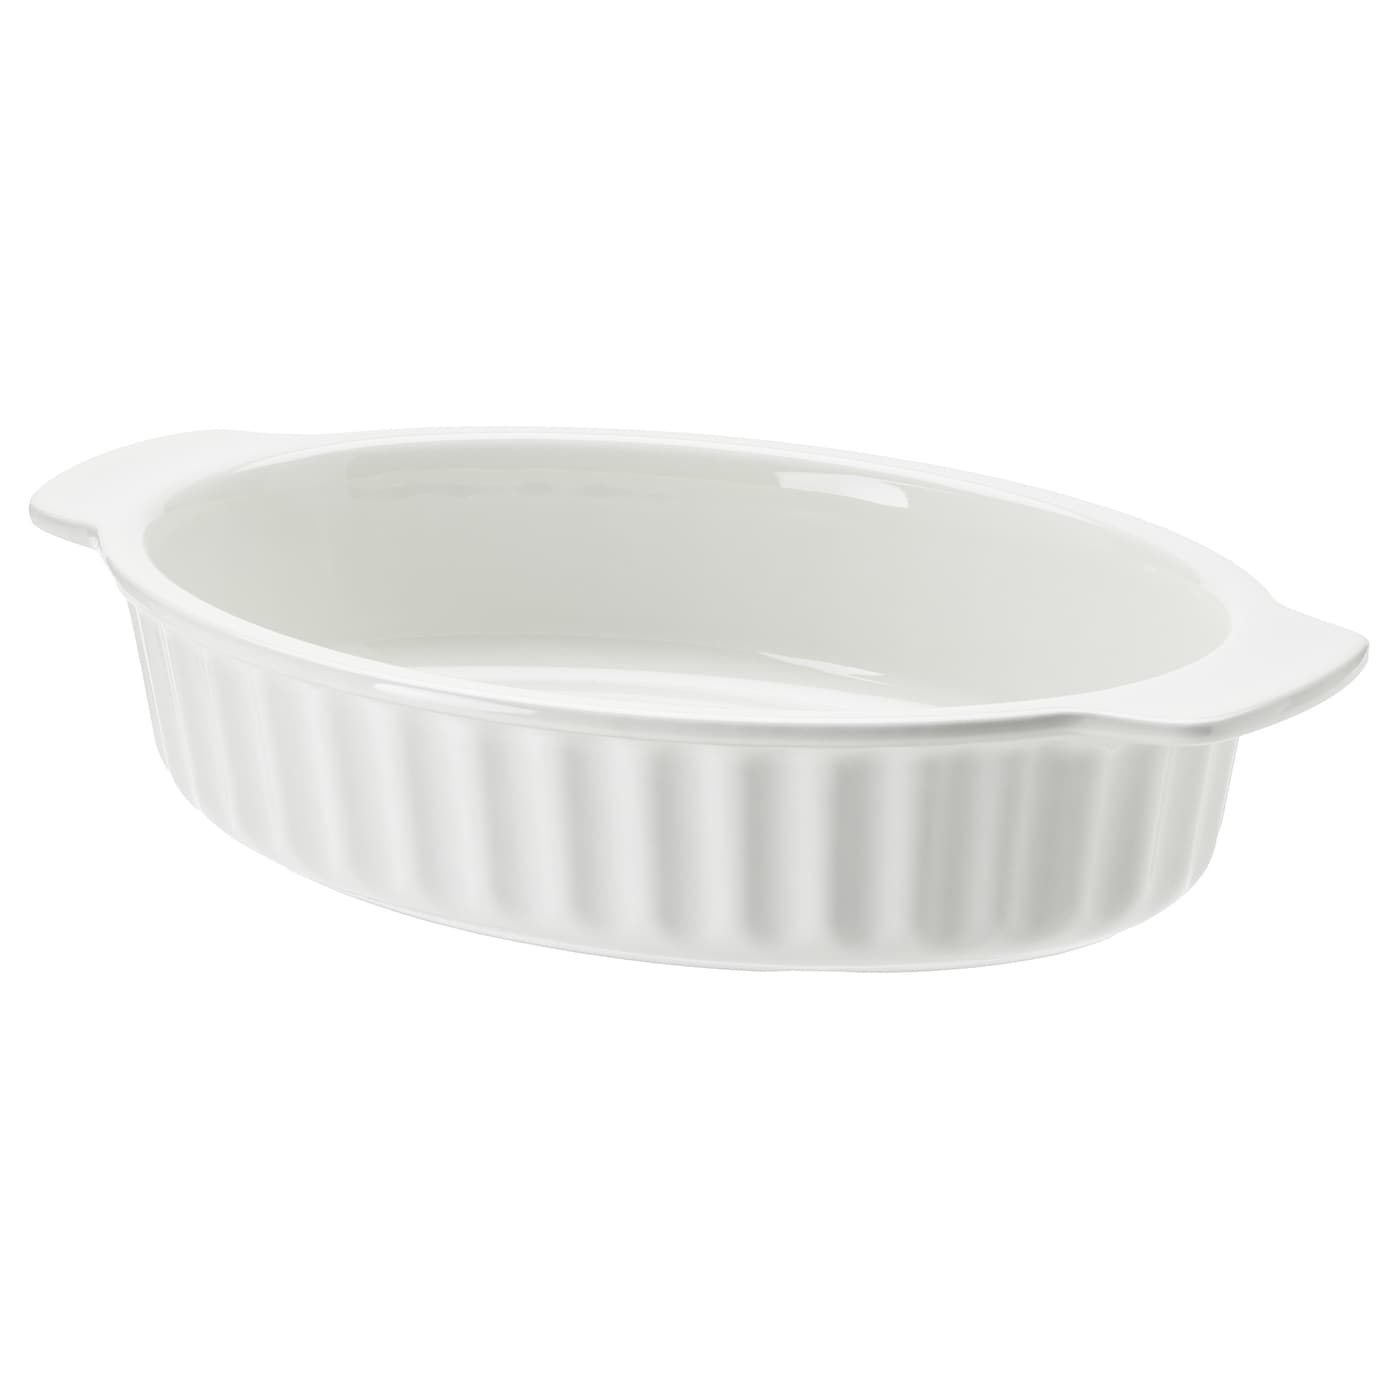 POETISK Форма для выпечки, овальная/натуральный белый, 32x21 см IKEA форма для выпечки ikea vardagen 38x29 серебристый